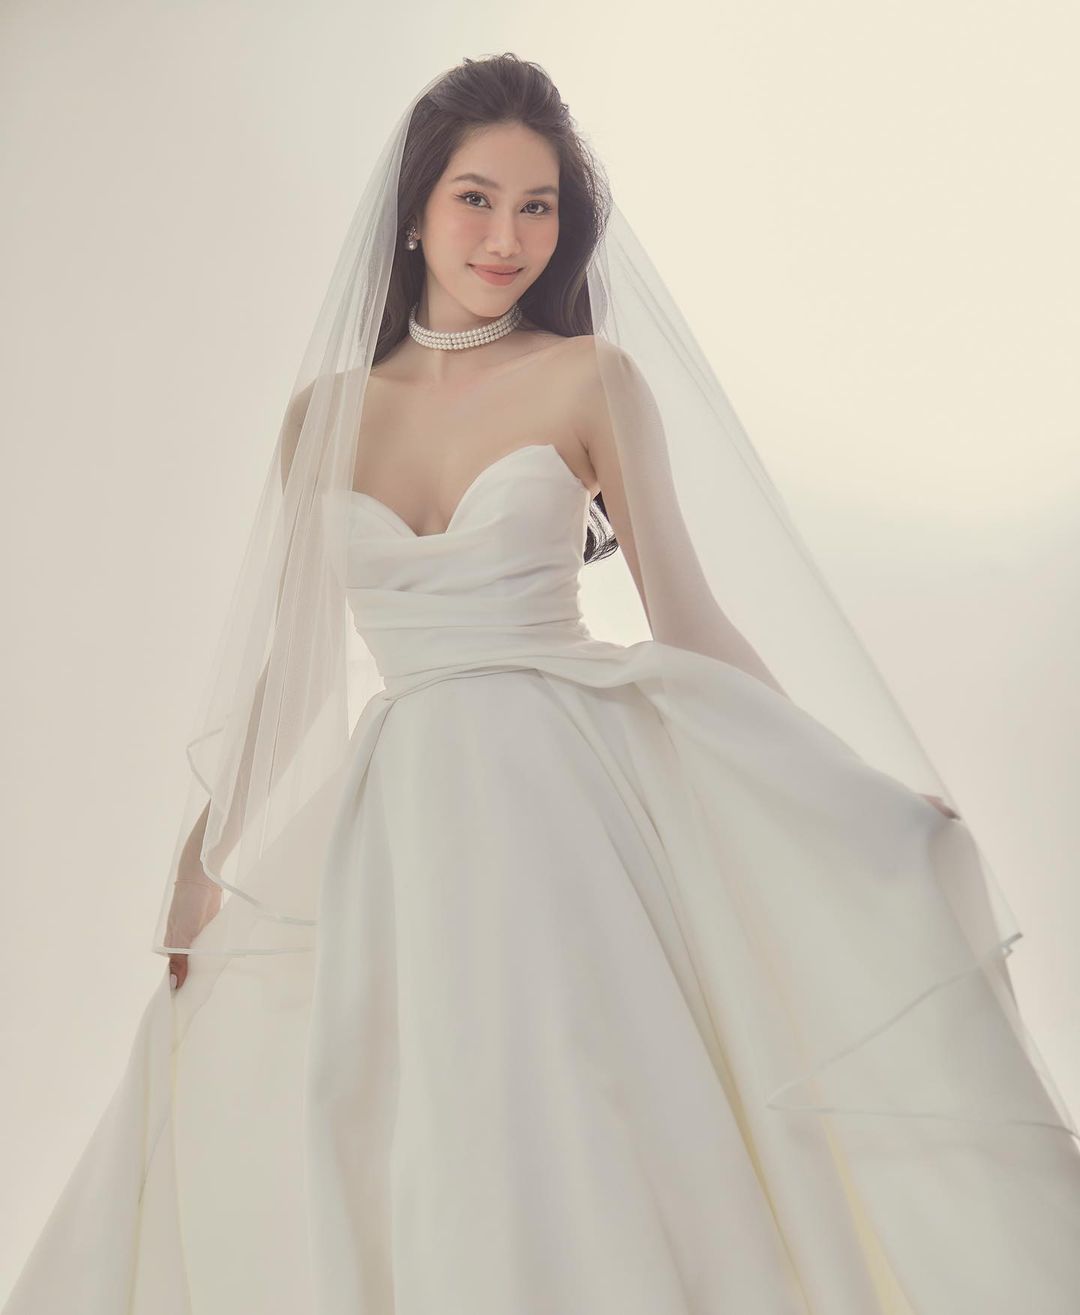 Váy cưới phong cách cổ điển của Diễm My 9x - VnExpress Giải trí